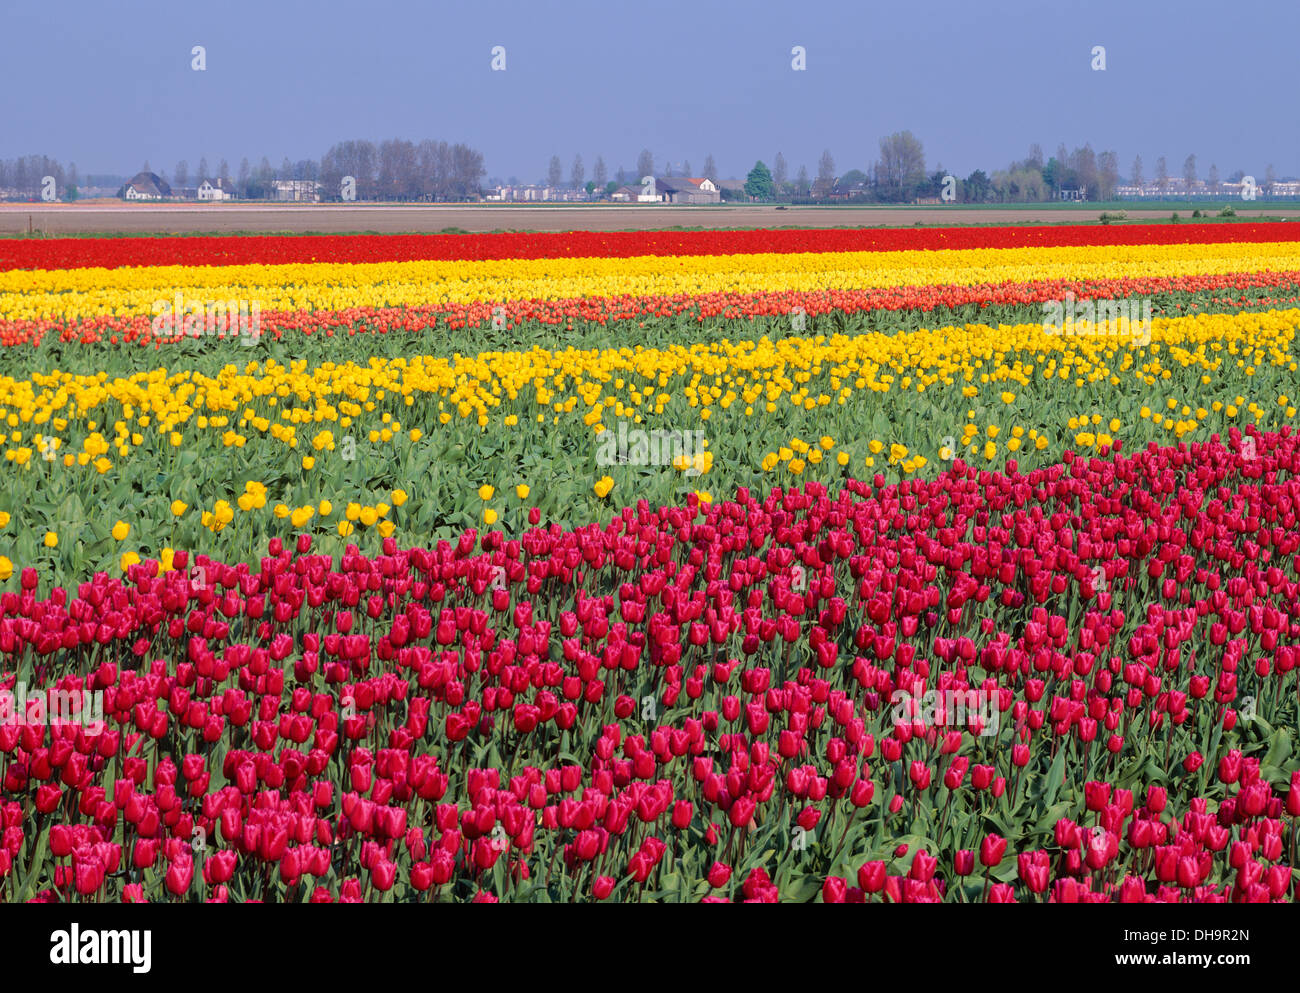 Champ de tulipes, Pays-Bas Banque D'Images